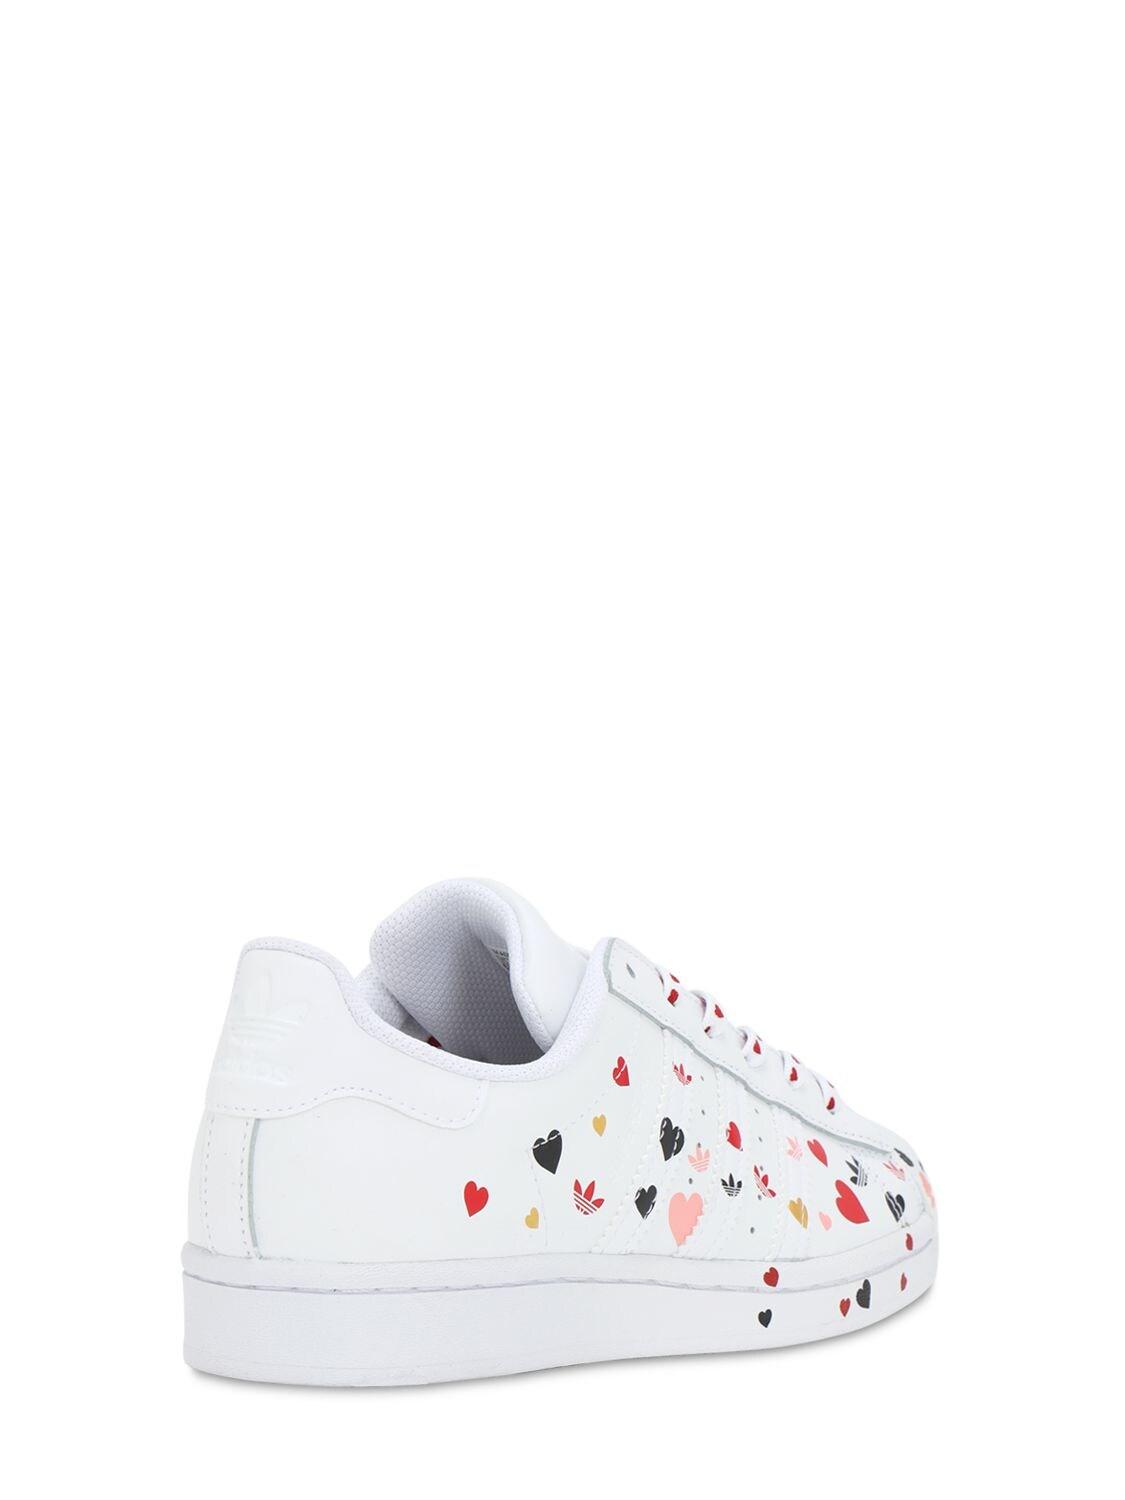 adidas Originals Gummi – Superstar – e Sneaker mit Herz-Muster in Weiß |  Lyst AT